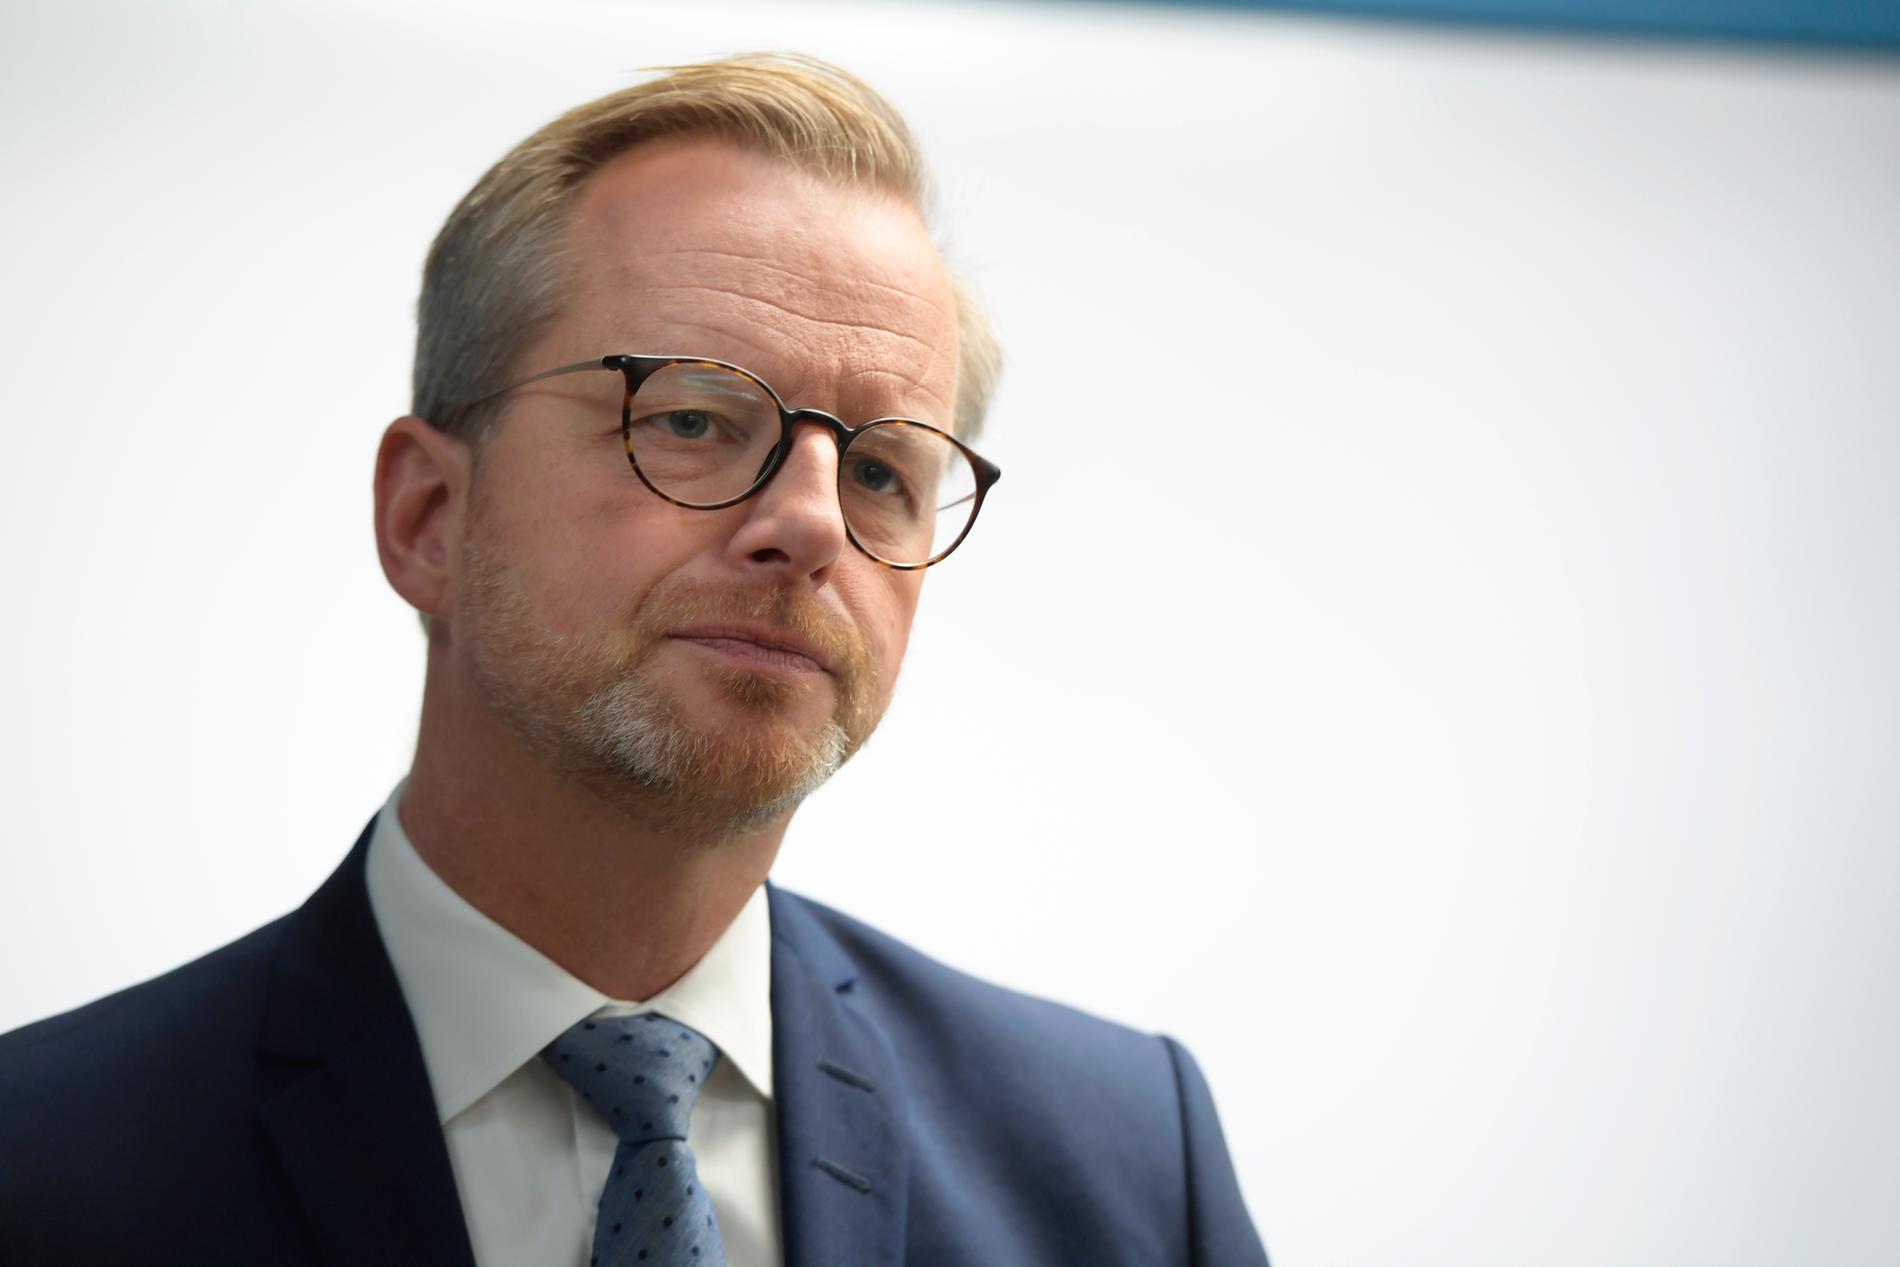 Inrikesminister Mikael Damberg (S) säger att regeringen först vill ta del av expertmyndigheternas bedömning av de nya uppgifterna innan man uttalar sig om en eventuell ny utredning.